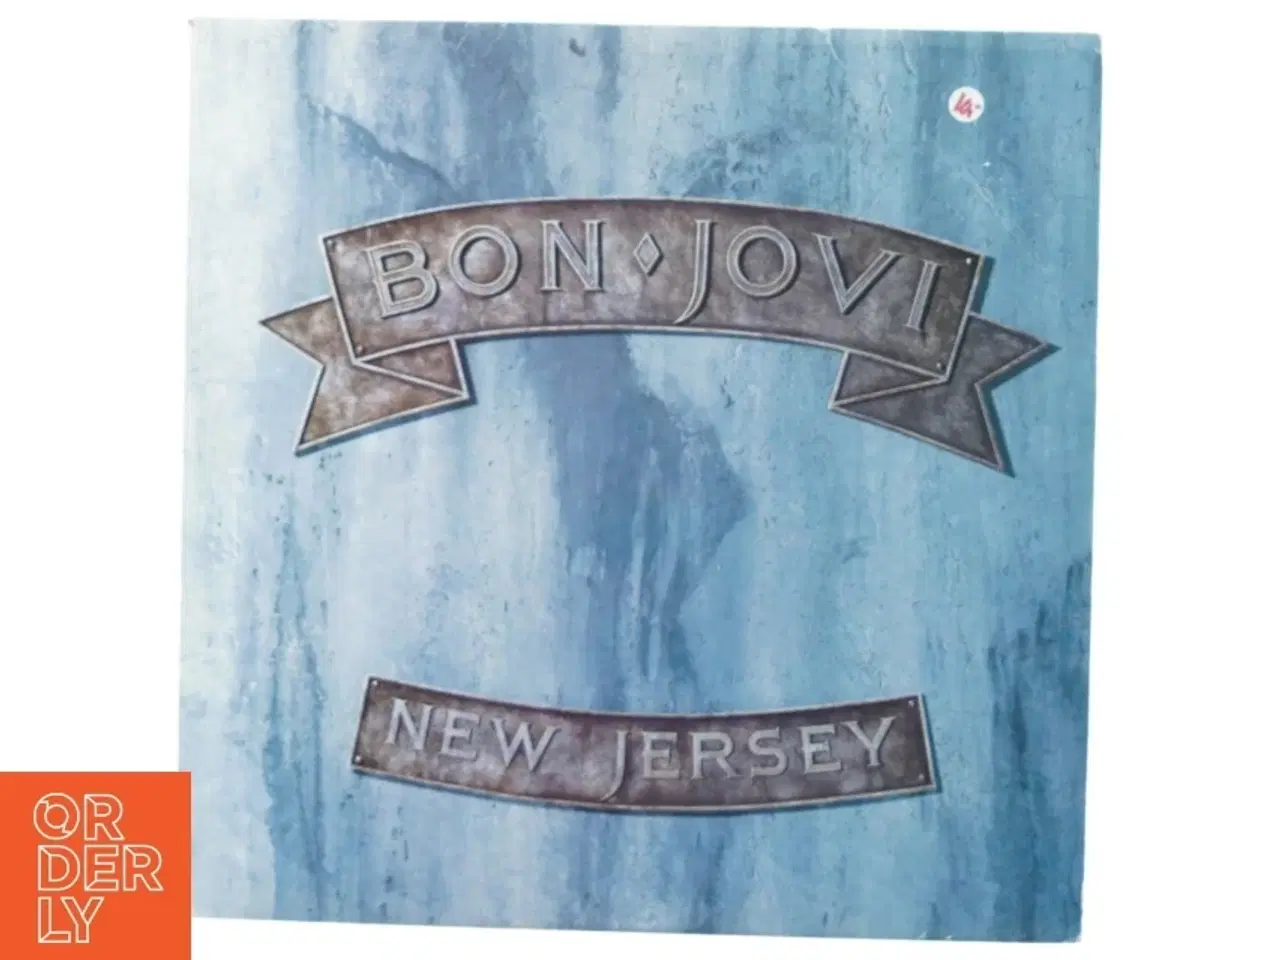 Billede 1 - Bon Jovi, new jersey fra Rb (str. 30 cm)